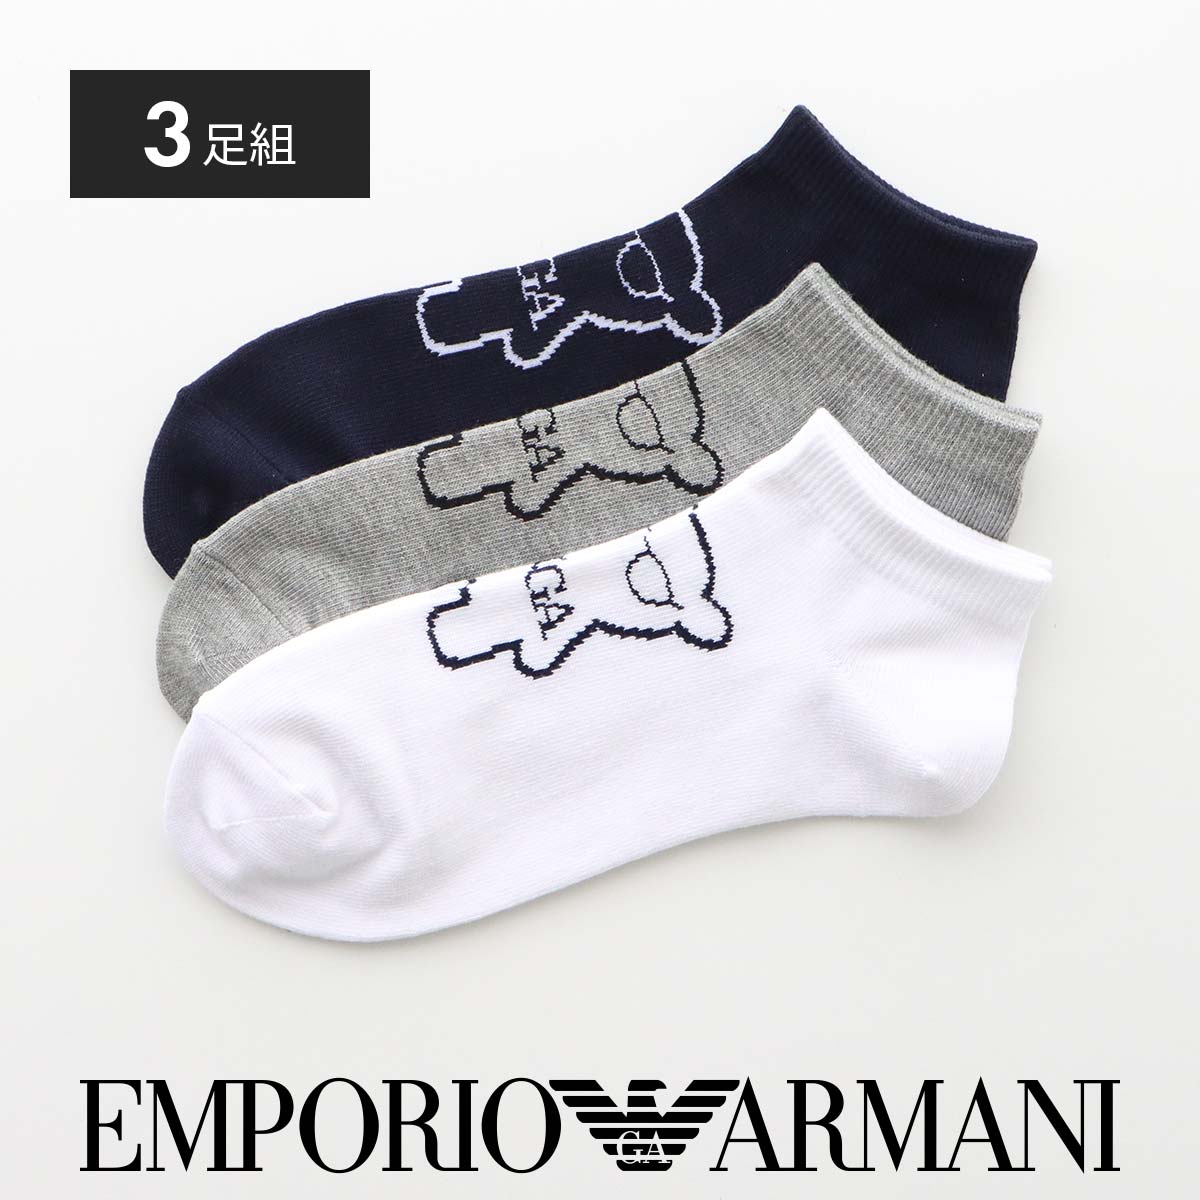 [3足セット]EMPORIO ARMANI エンポリオ アルマーニ マンガベア スニーカー丈 カジュアルソックス 靴下 男性 メンズ 92342705  公式ショップ 正規ライセンス商品